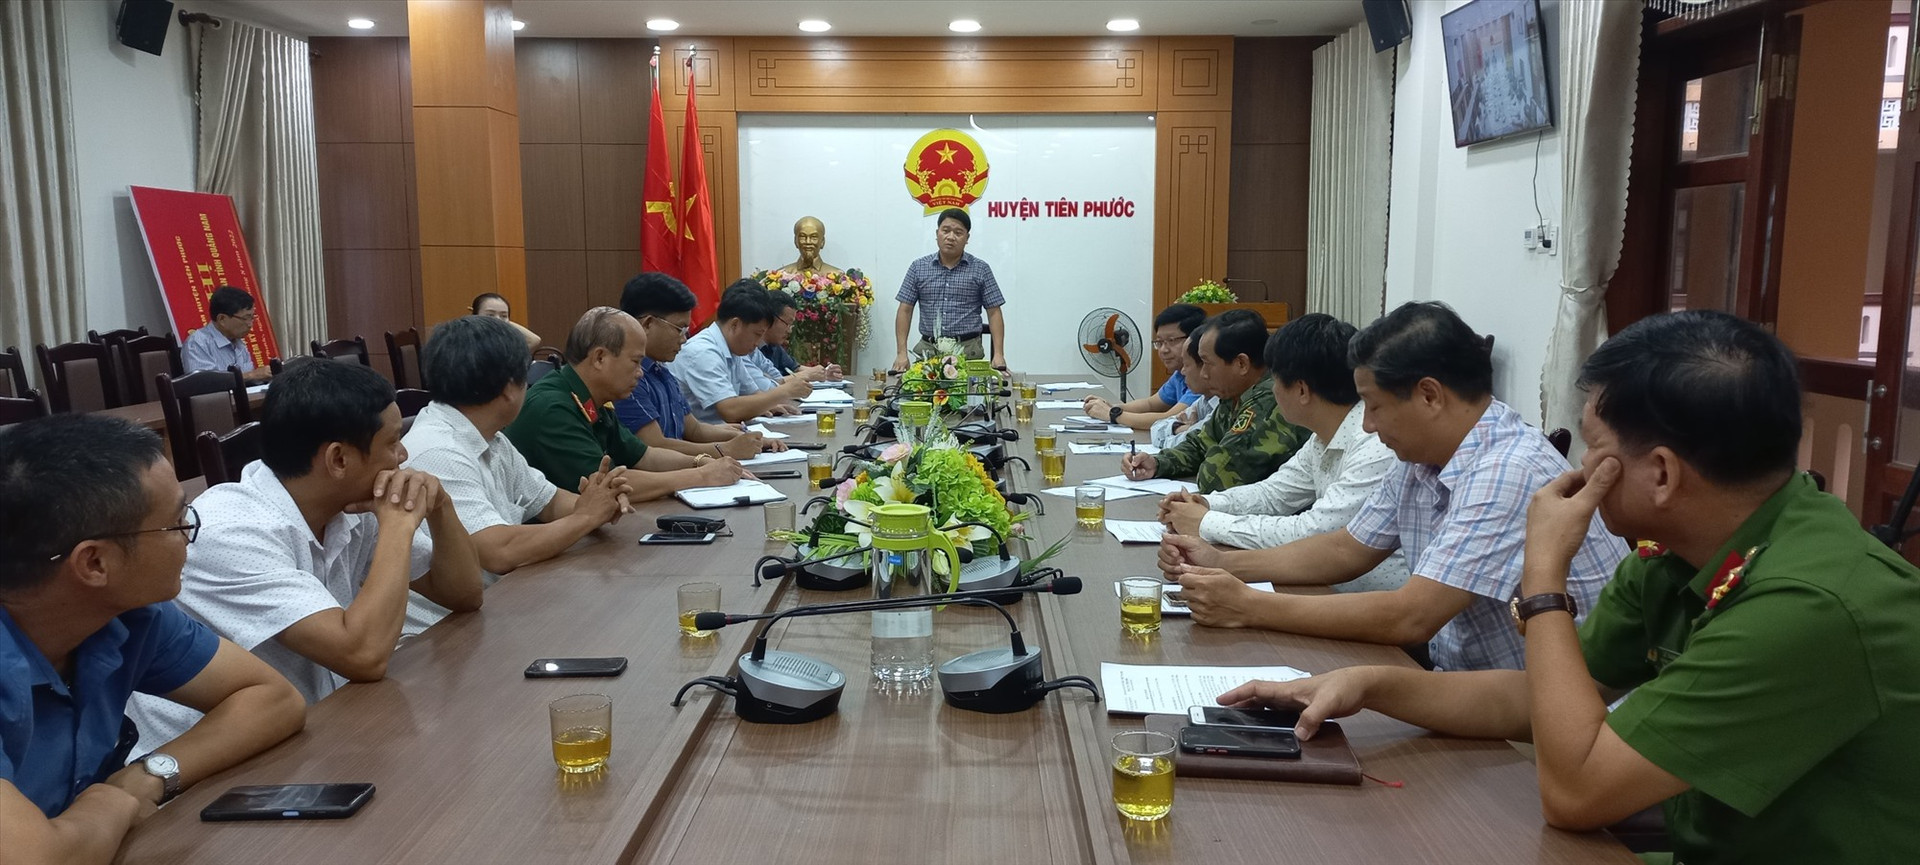 Phó Chủ tịch UBND tỉnh Trần Văn Tân làm việc với huyện Tiên Phước sáng nay về ứng phó với bão số 4